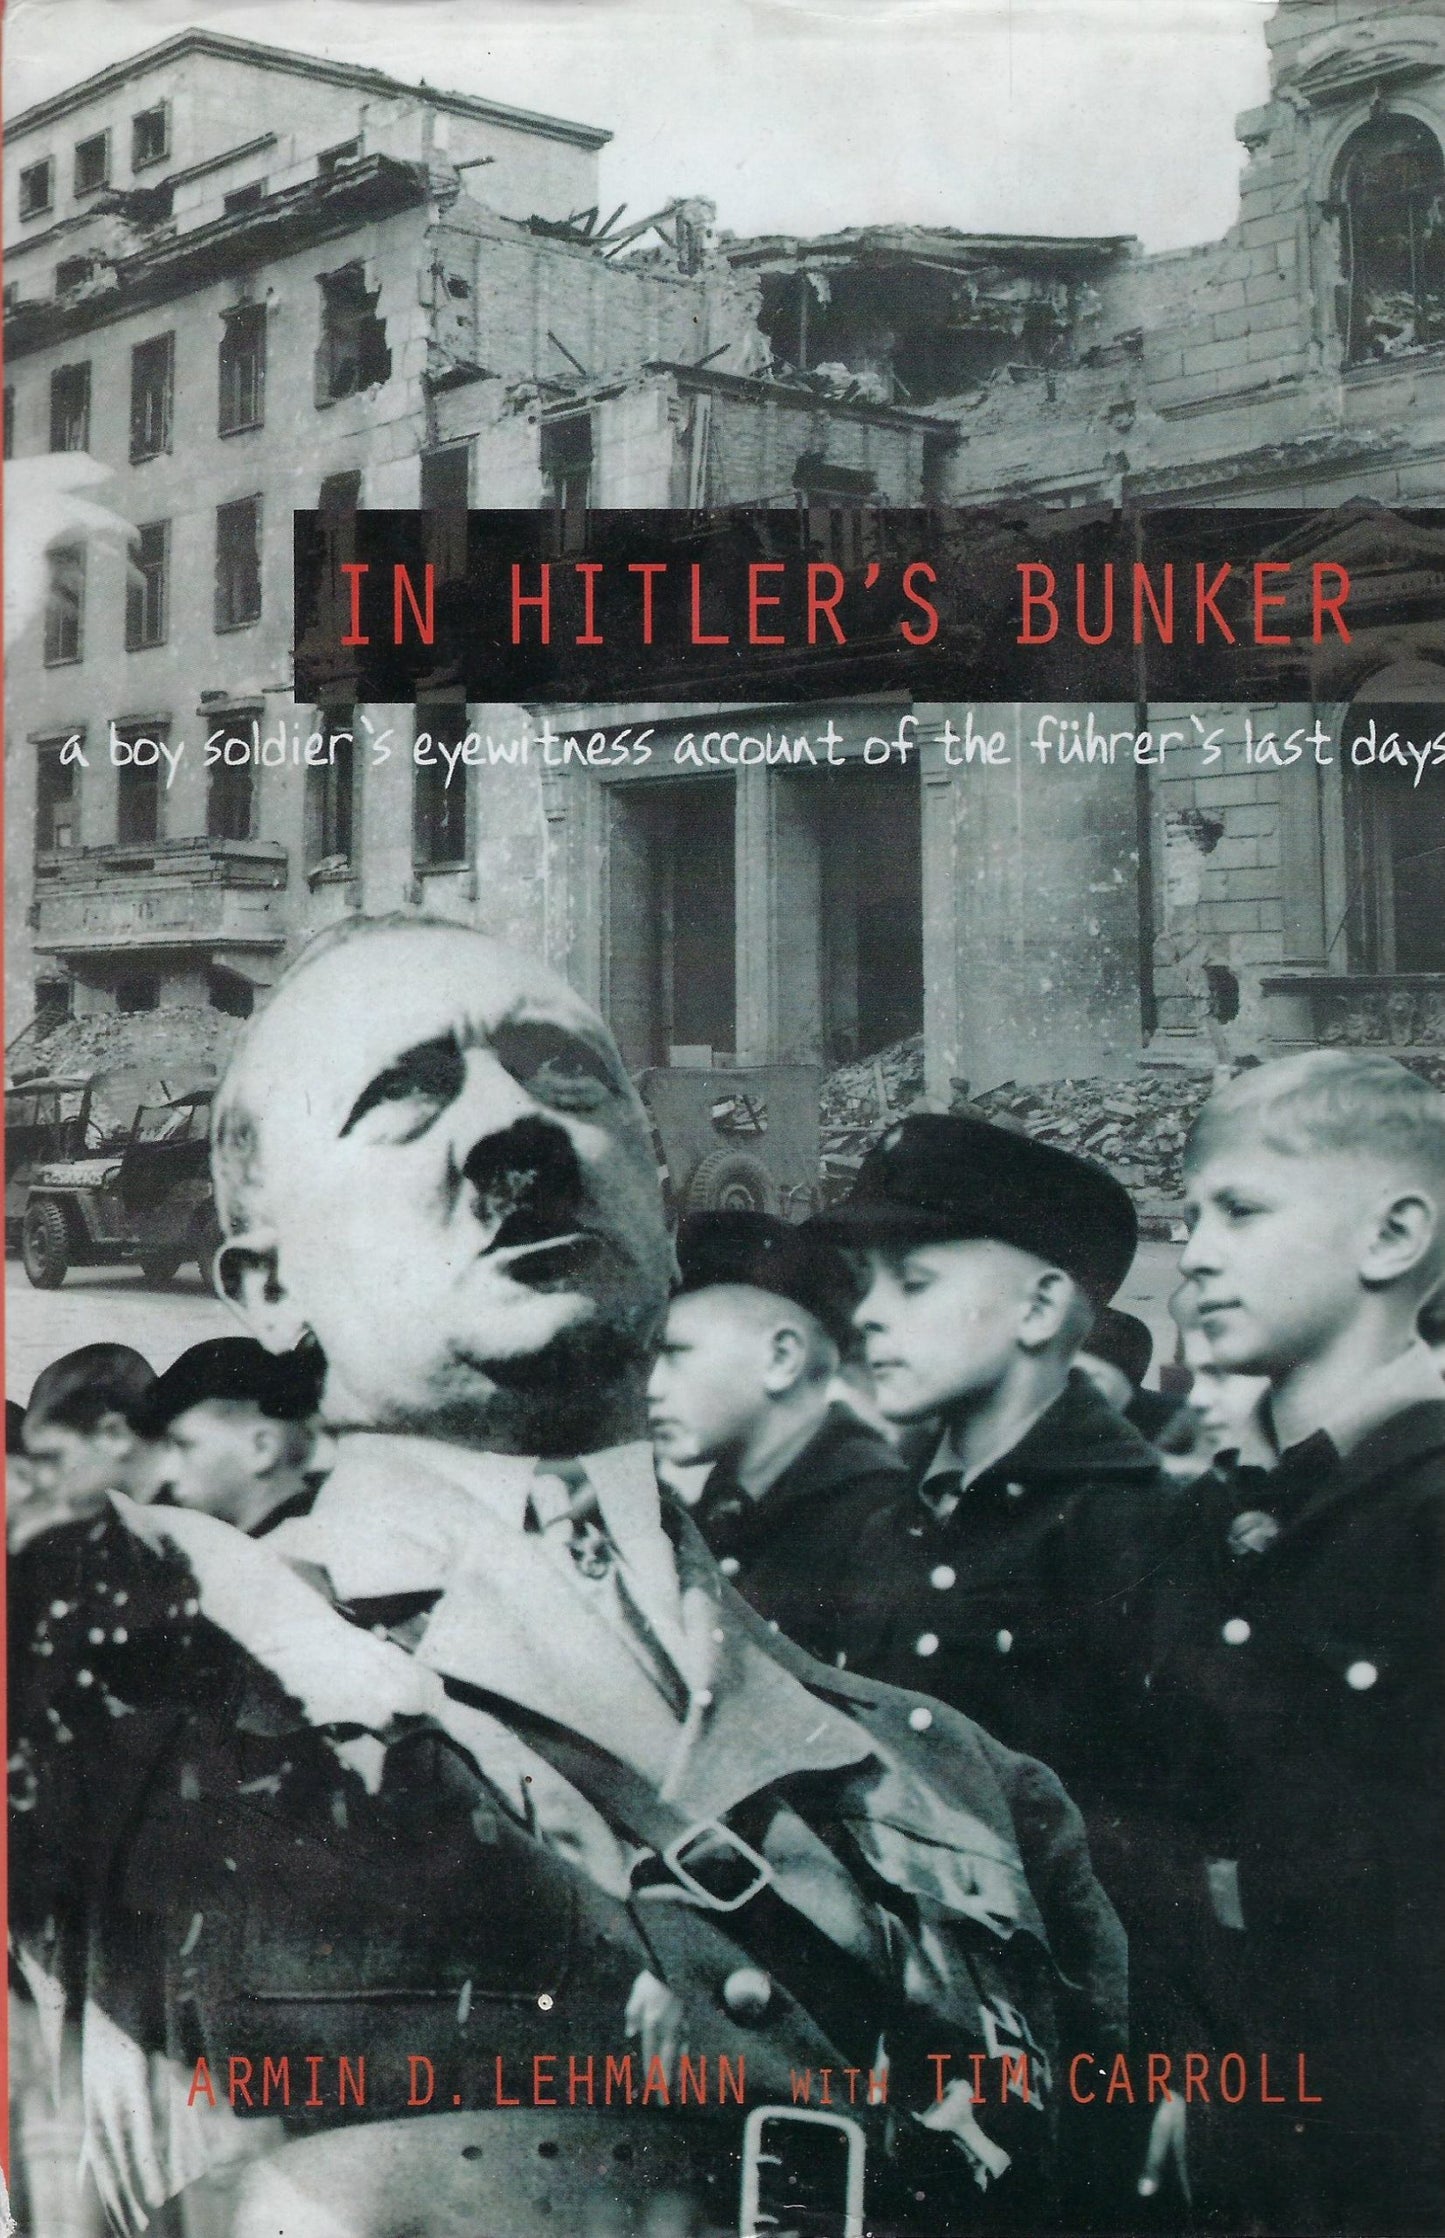 In Hitler's bunker